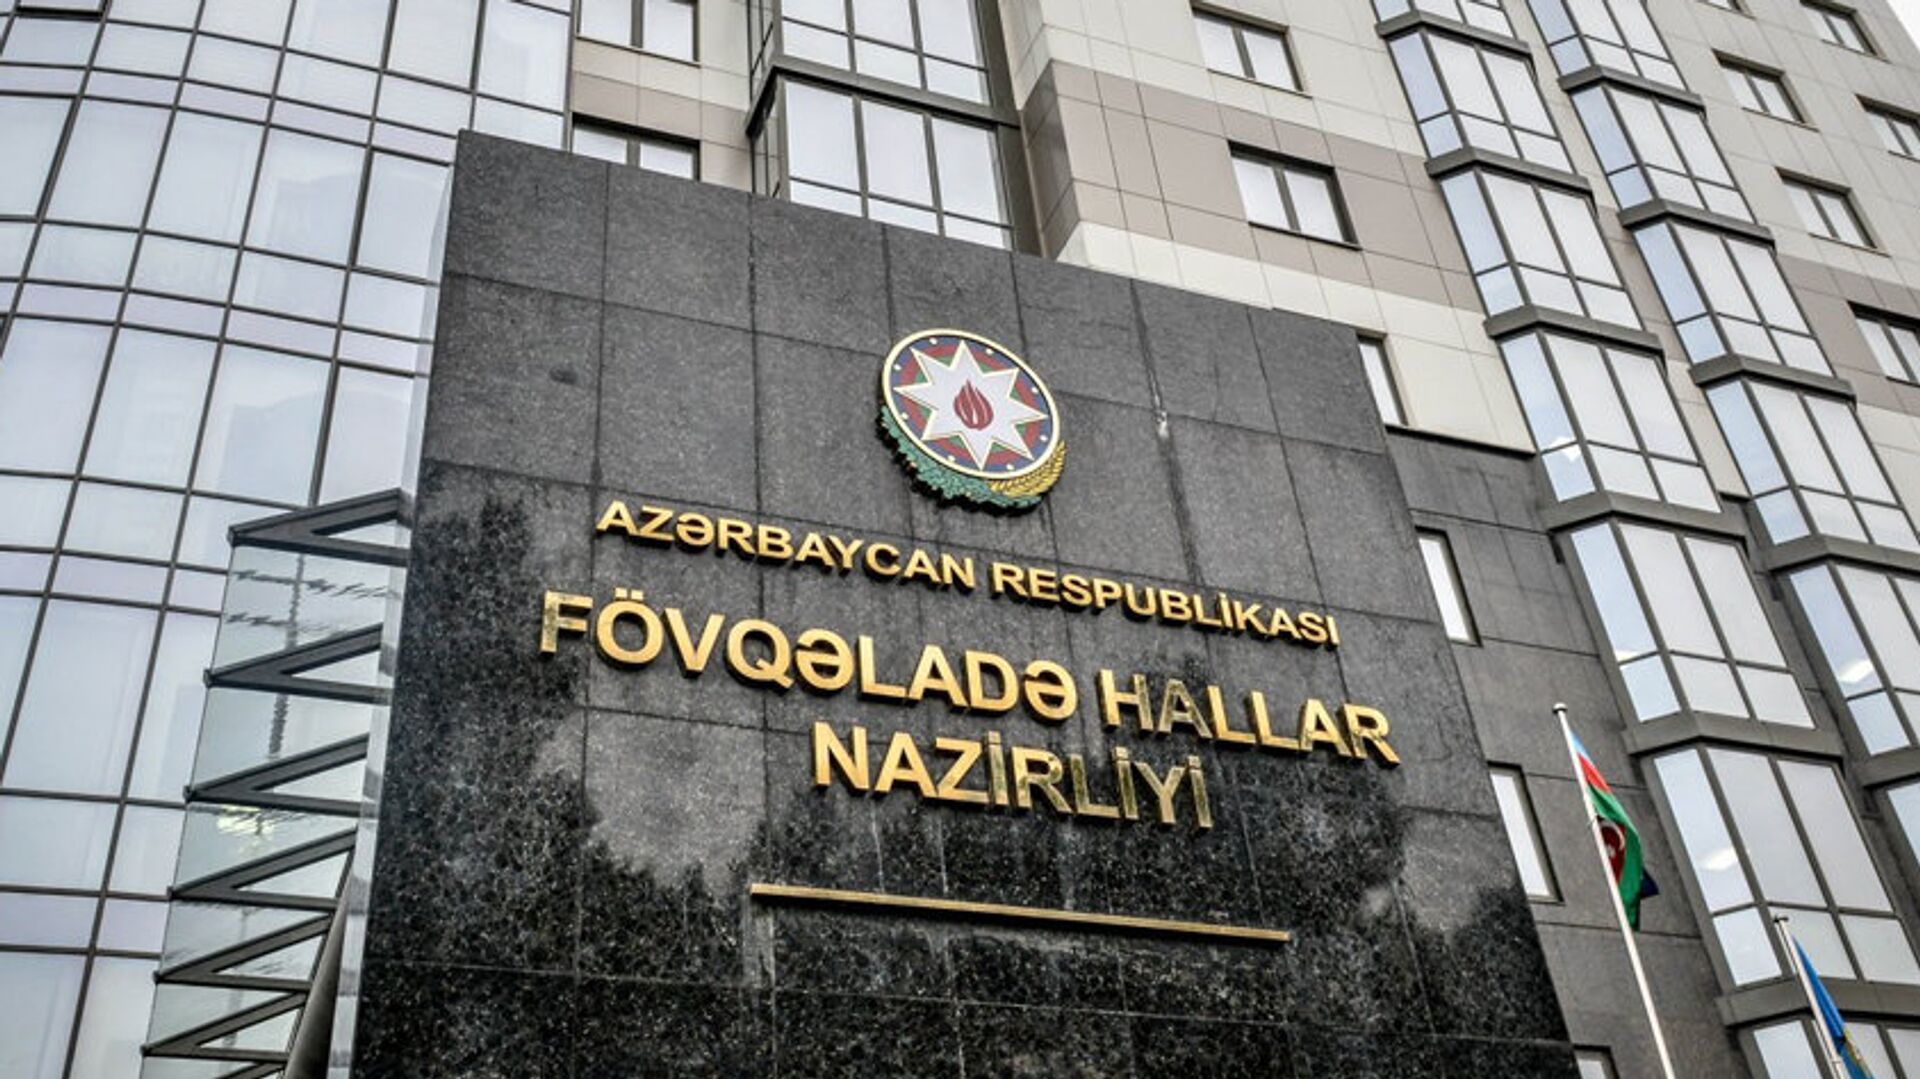 Здание Министерства по чрезвычайным ситуациям Азербайджанской Республики - Sputnik Azərbaycan, 1920, 05.06.2021